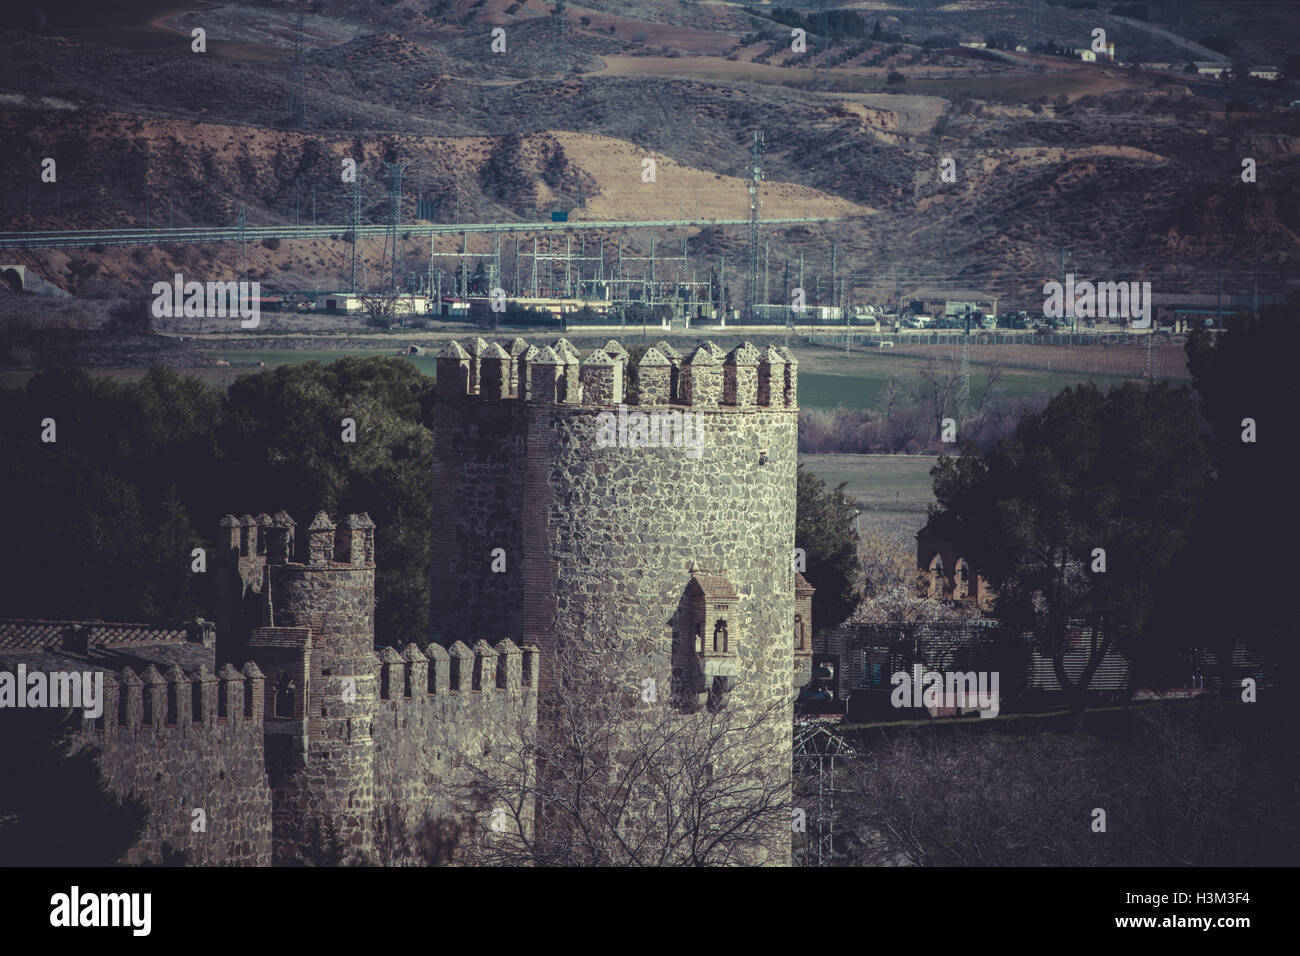 Stadtmauer von Toledo, spanische Kaiserstadt berühmt für seine riesige h Stockfoto